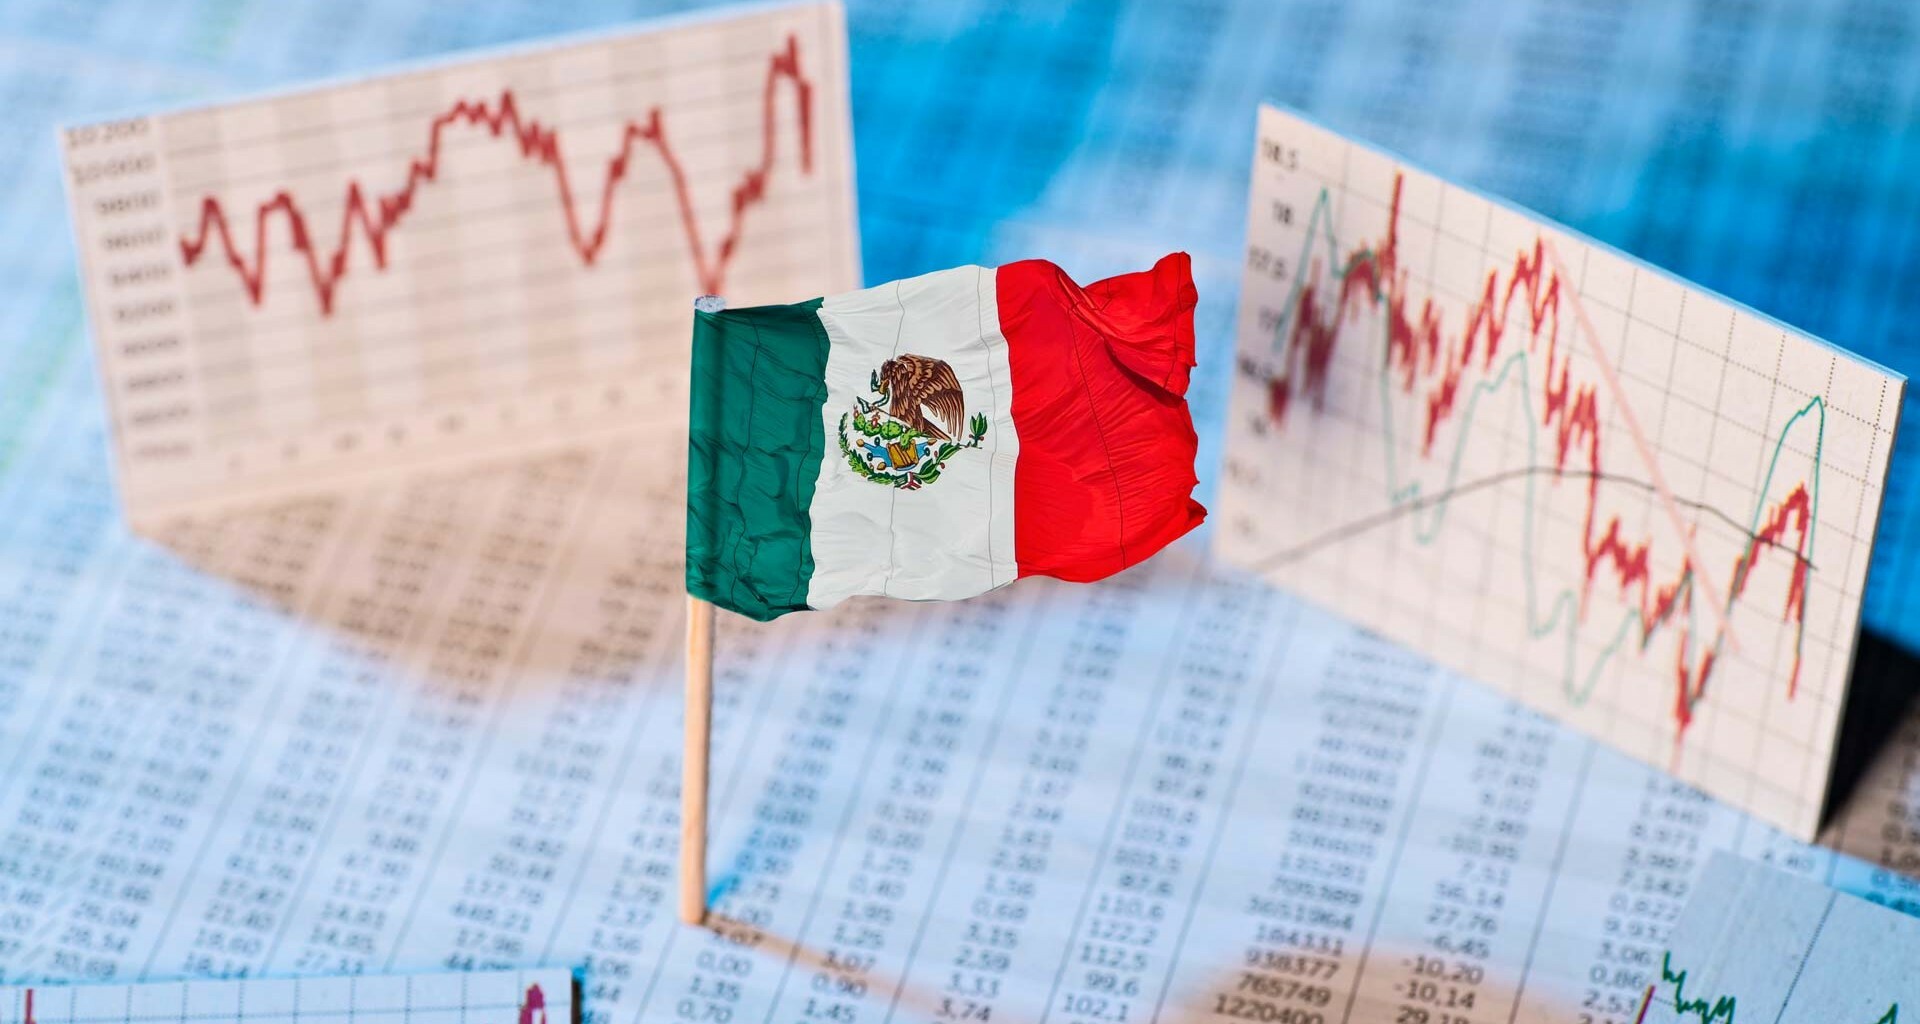 López Obrador descarta crisis financiera y prevé crecimiento económico en México